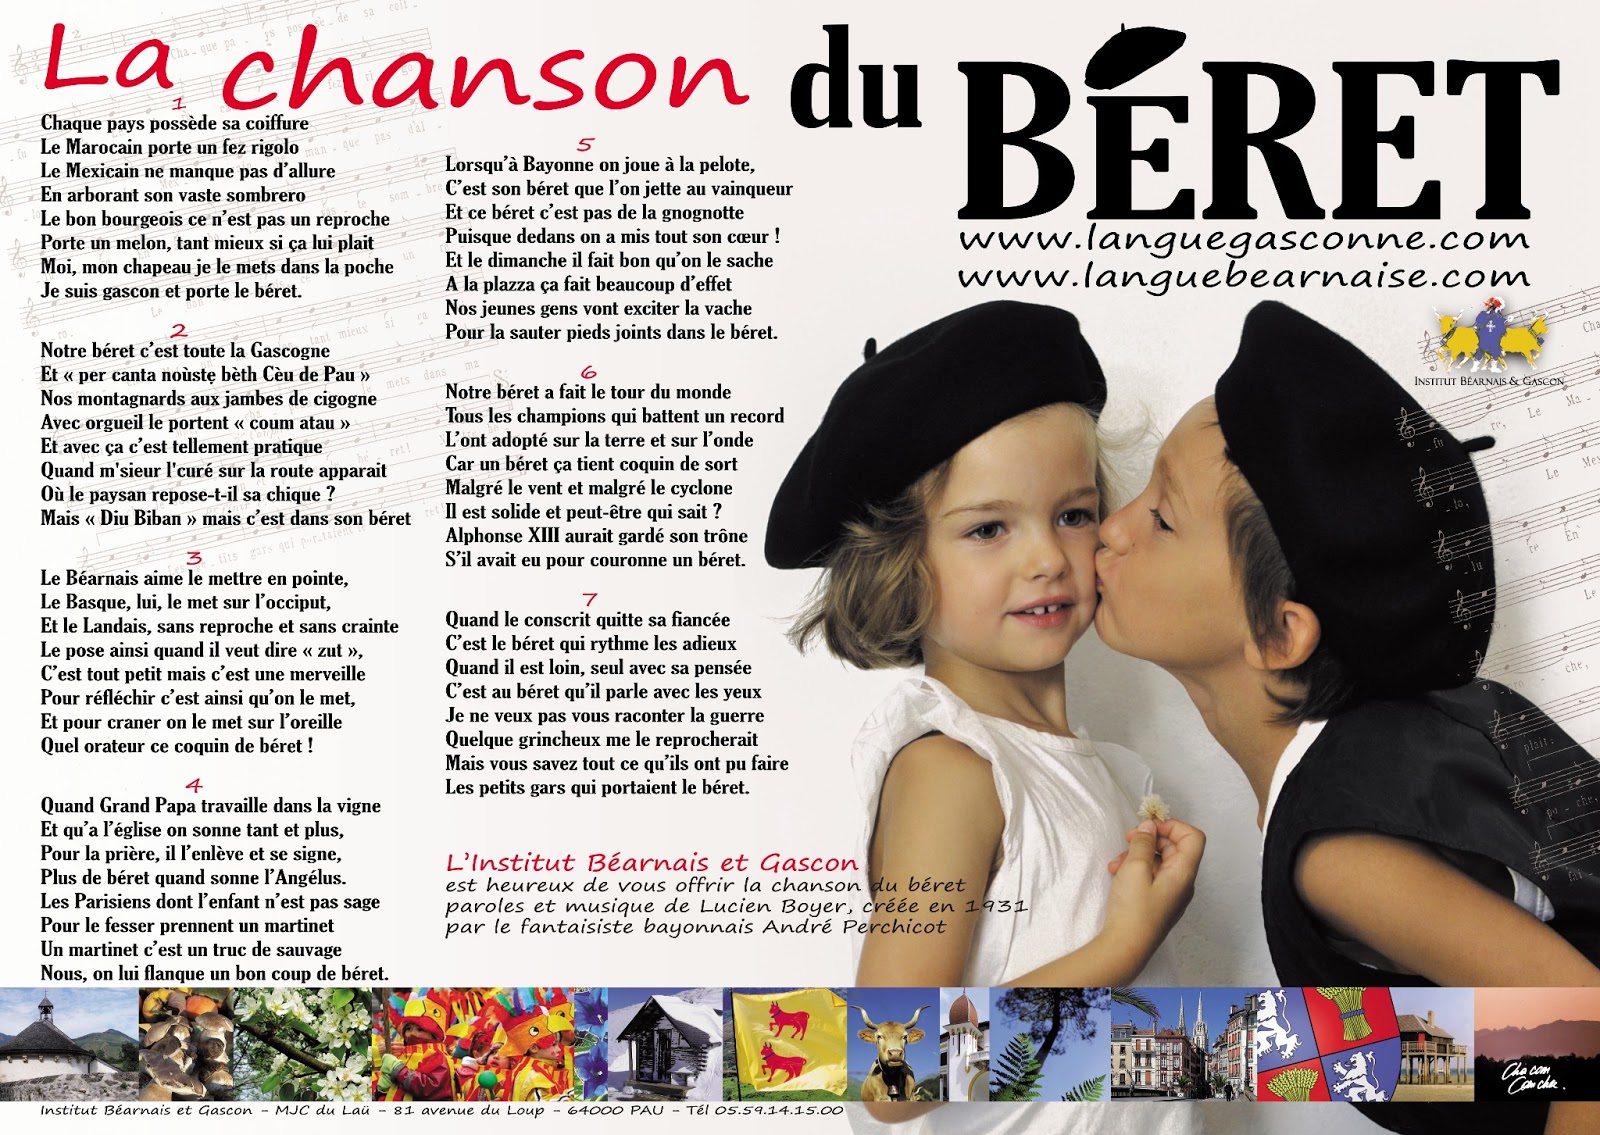 The Beret Project: La Chanson du Béret